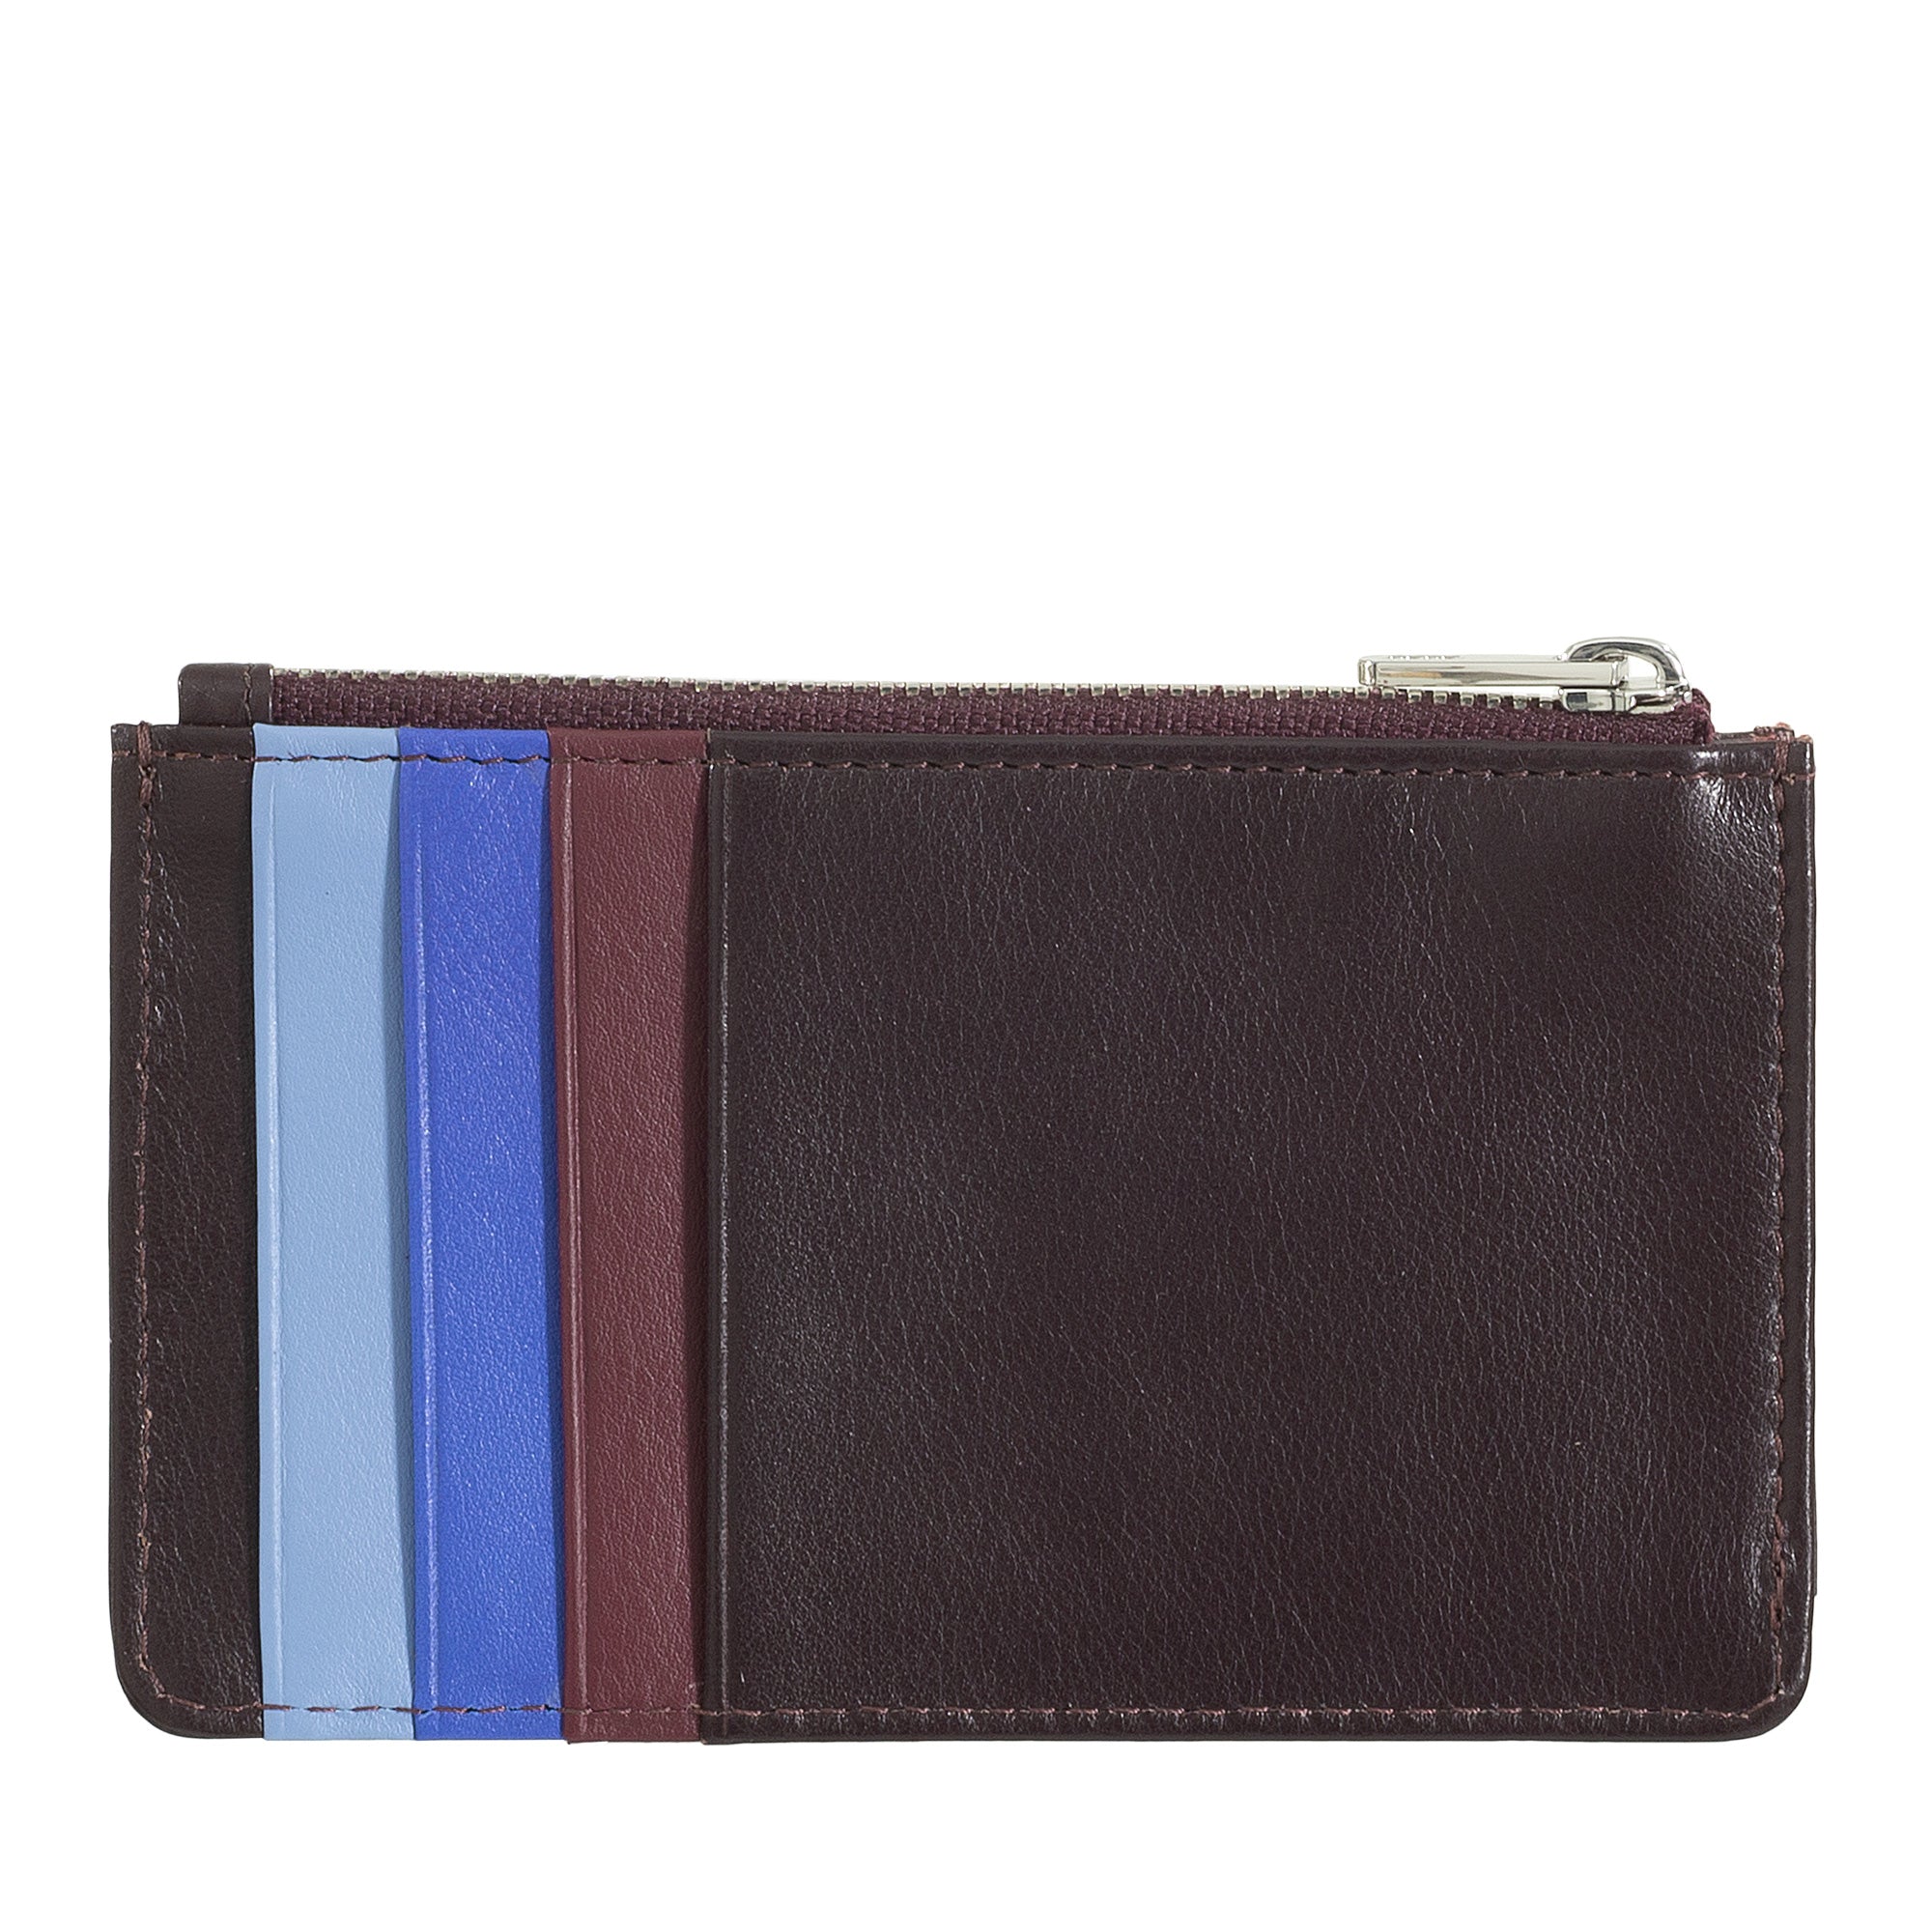 DuDu庐 BALI Multicolor Leather Wallet